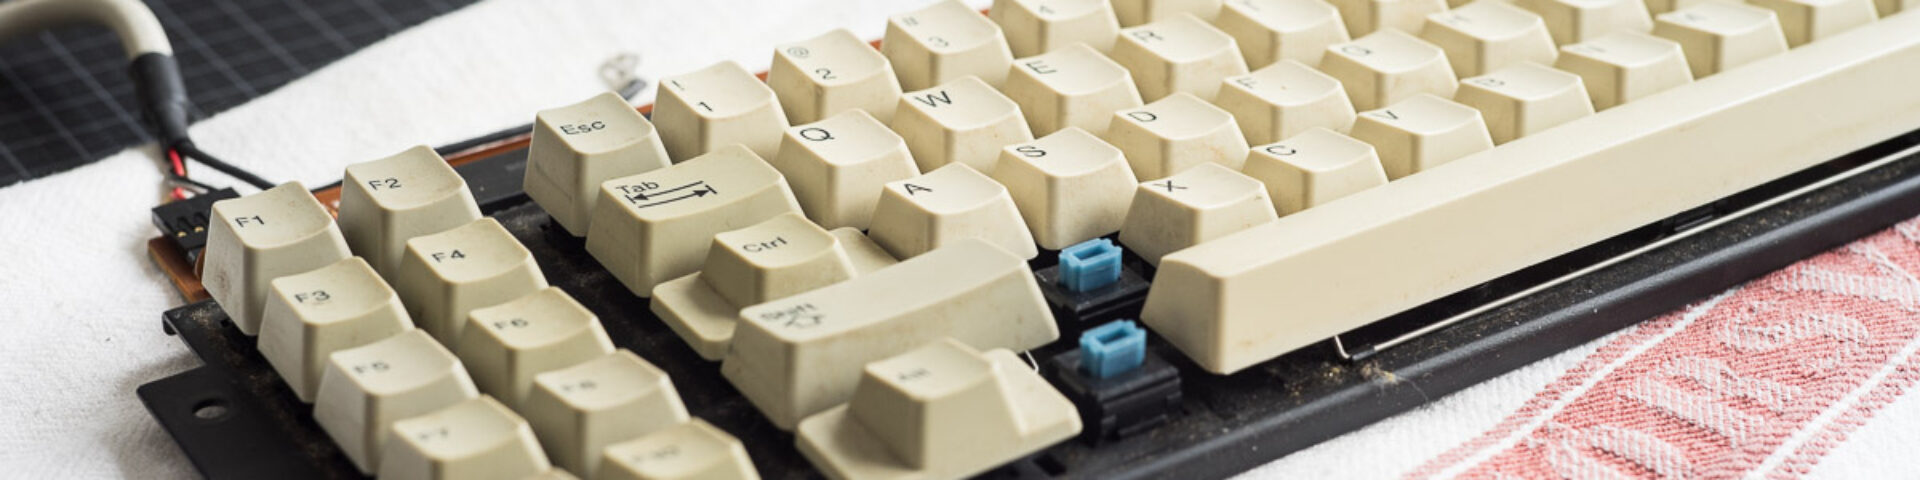 The Endgame Keyboard